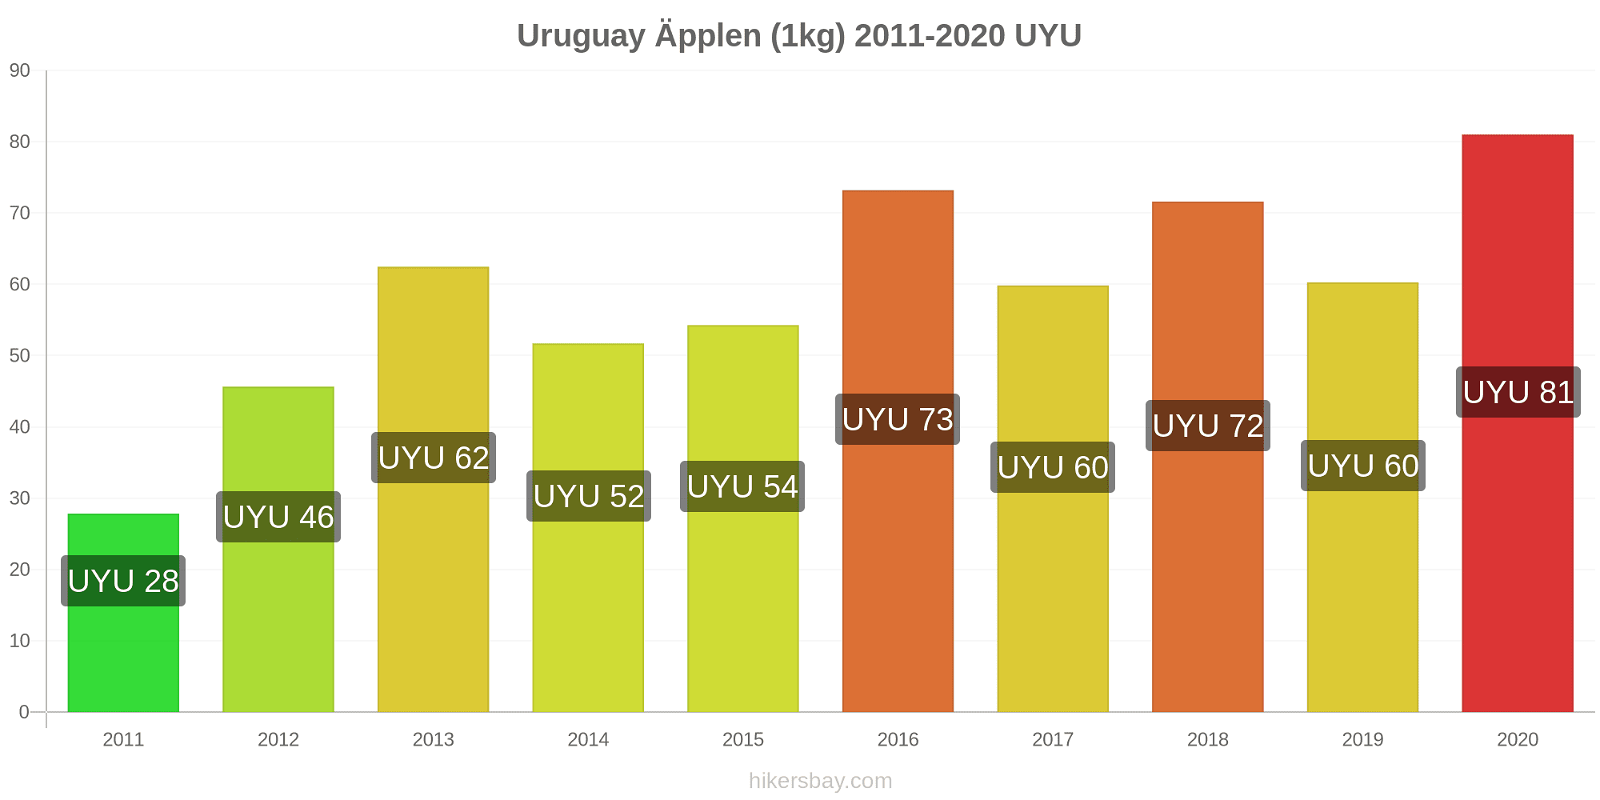 Uruguay prisförändringar Äpplen (1kg) hikersbay.com